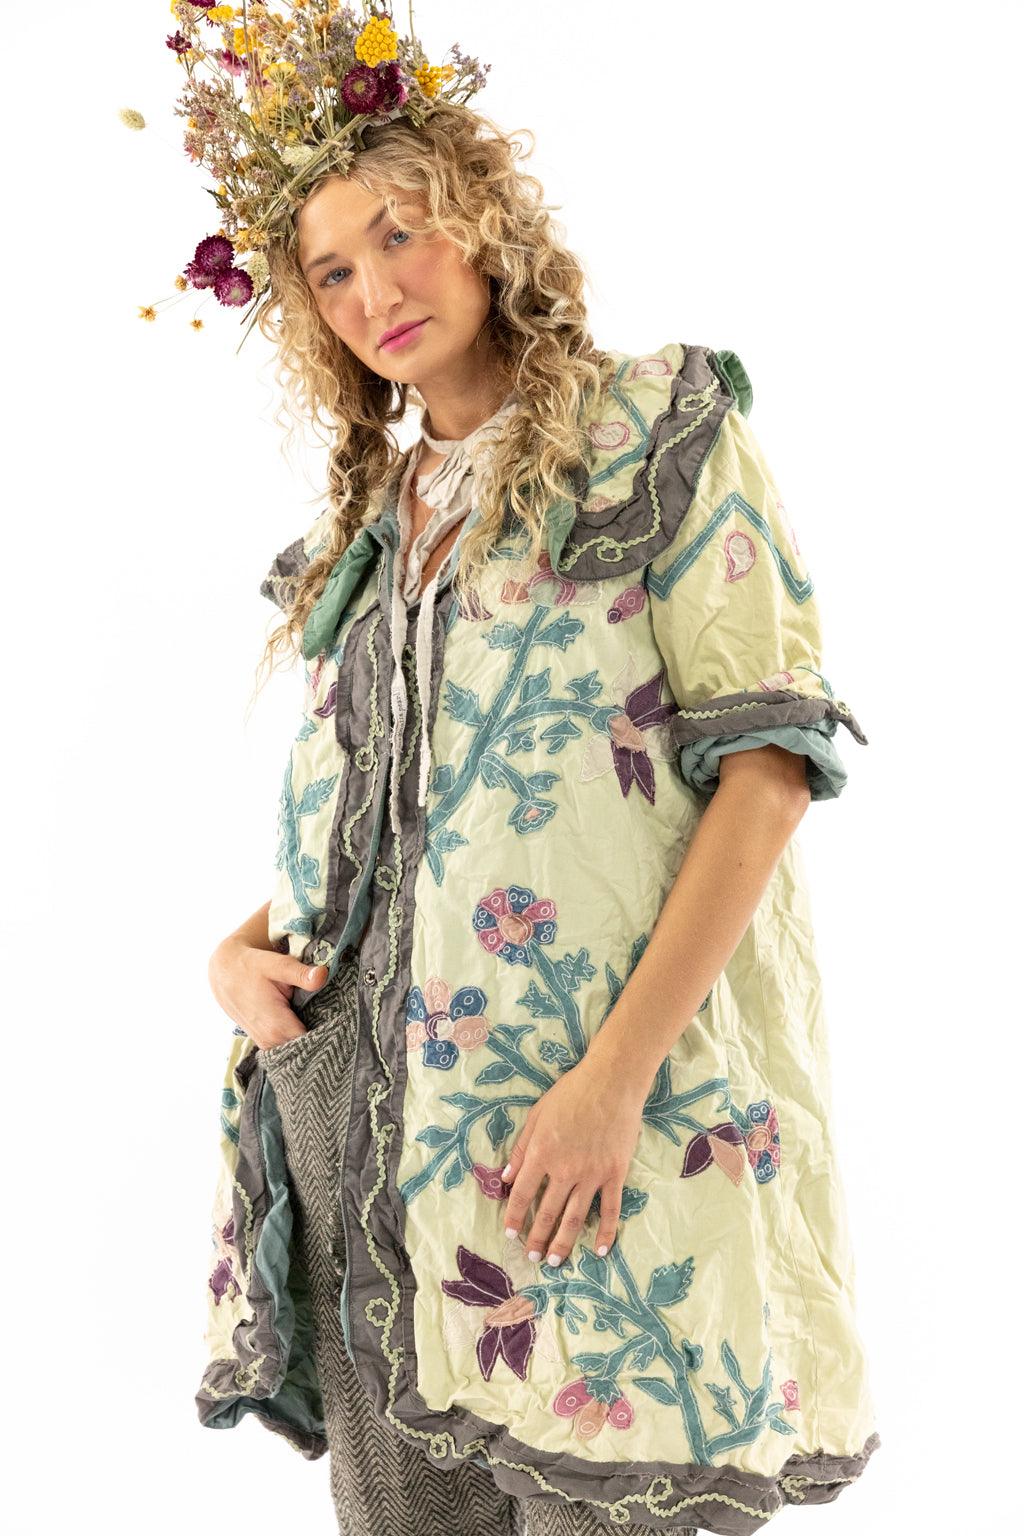 Appliqué Jooles Coat - Magnolia Pearl Clothing